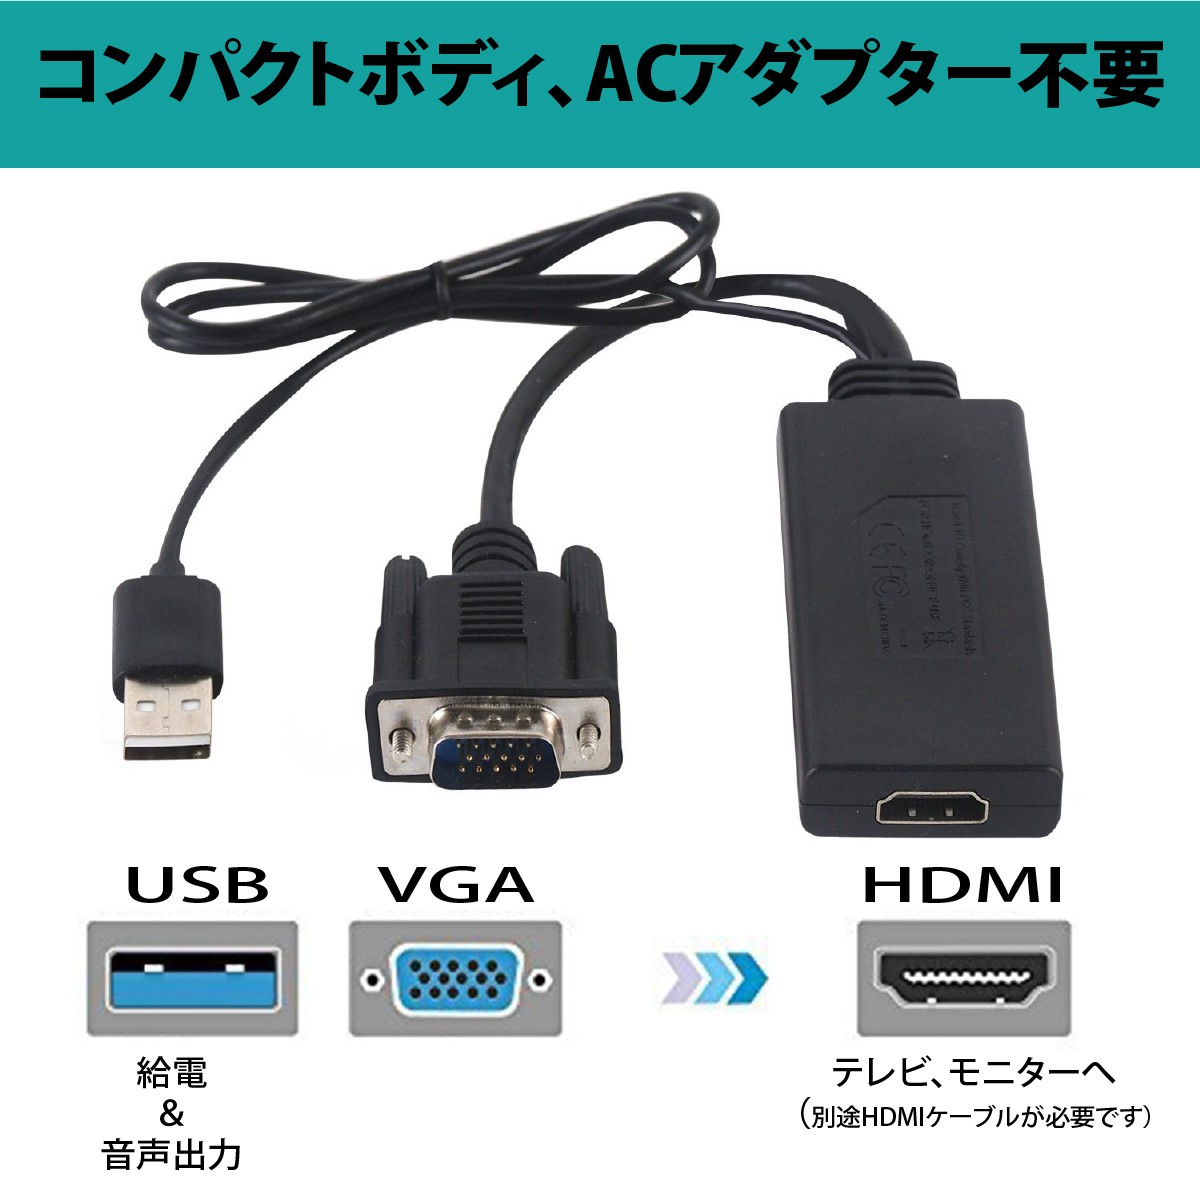 VGA to HDMI изменение адаптер 1080P звук соответствует PC HDTV монитор соответствует 1080P USB кабель имеется 